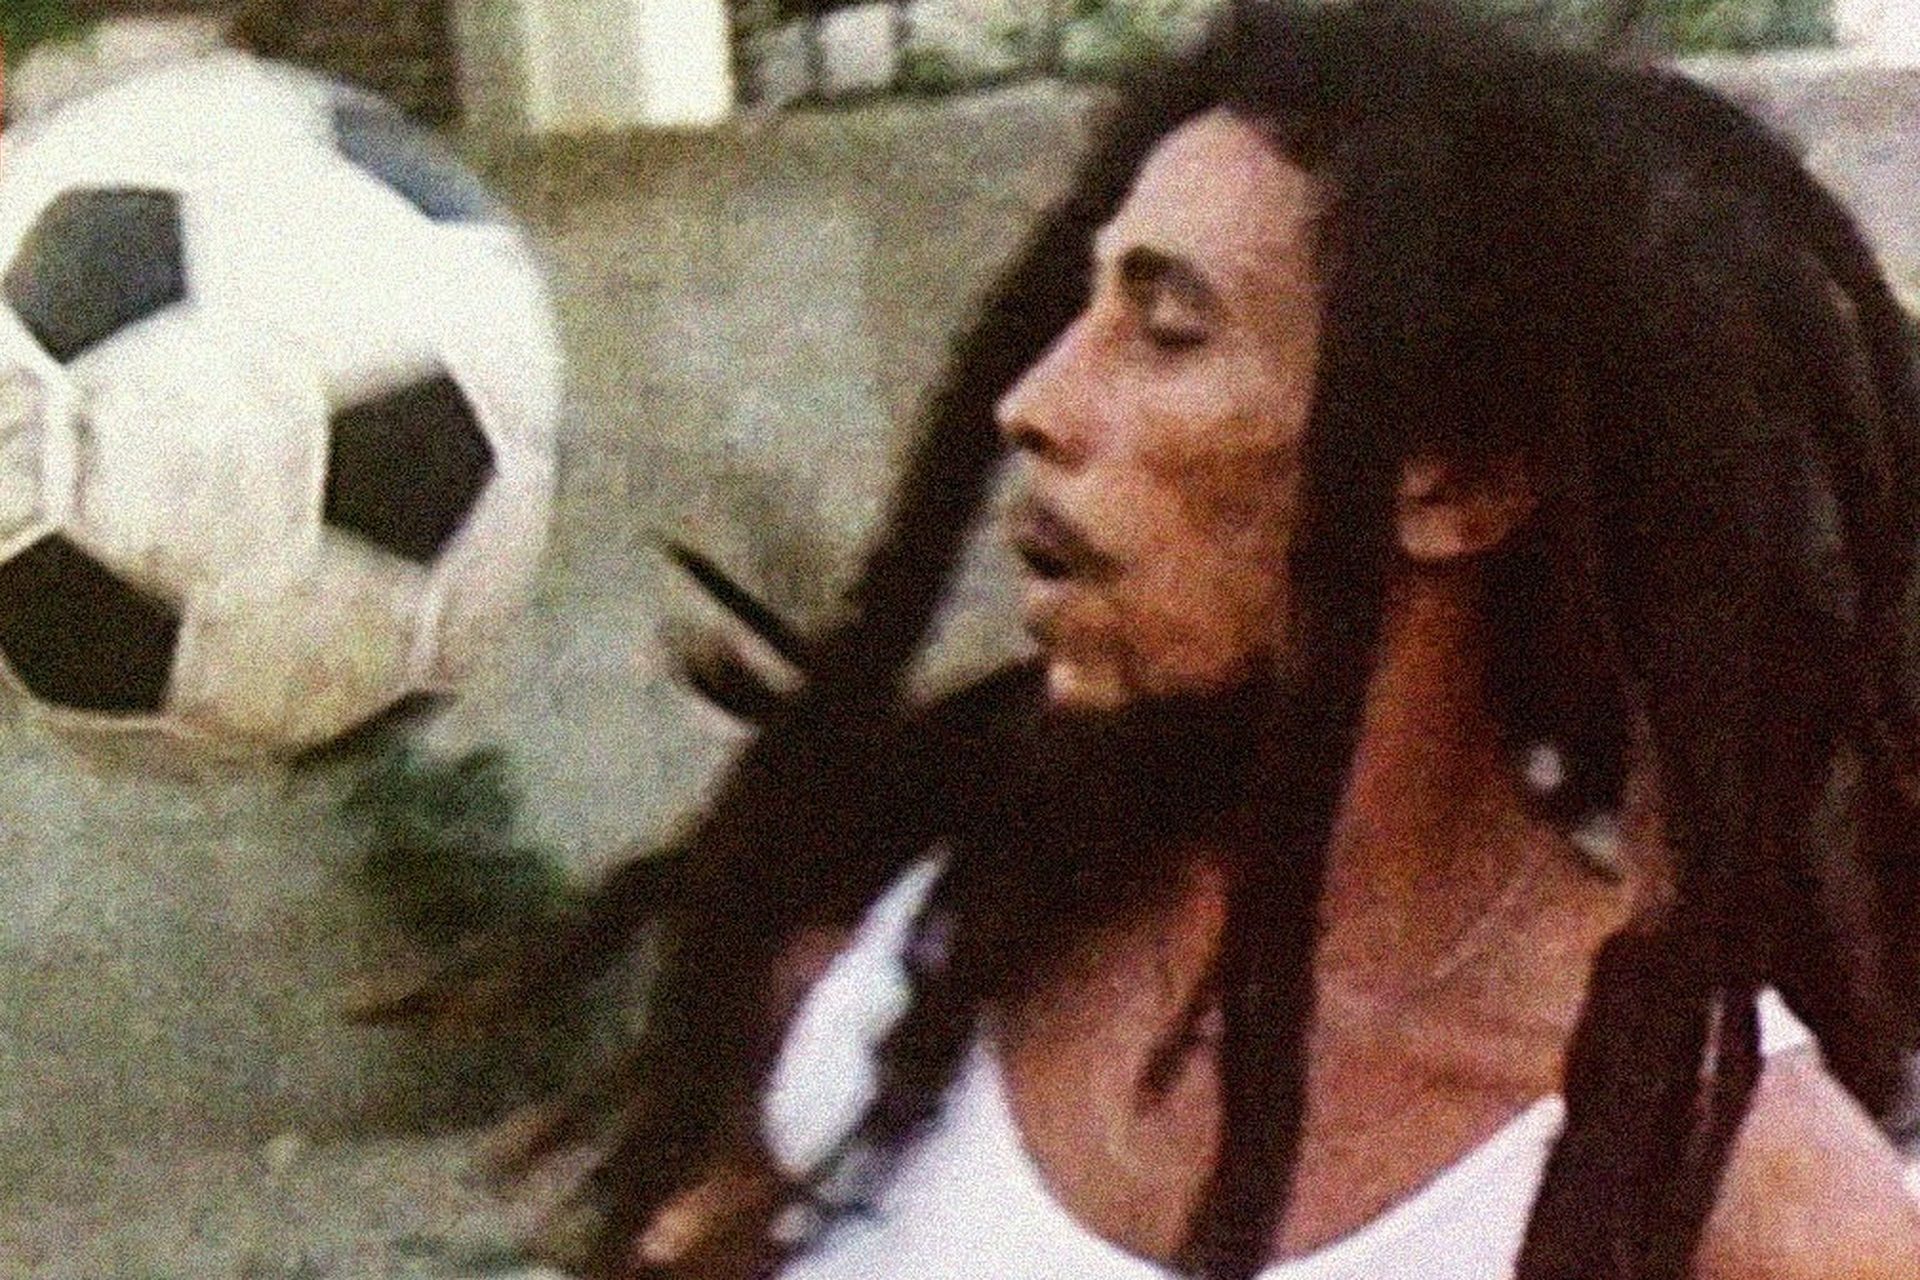 Bob Marley, calciatore professionista? Avrebbe potuto esserlo